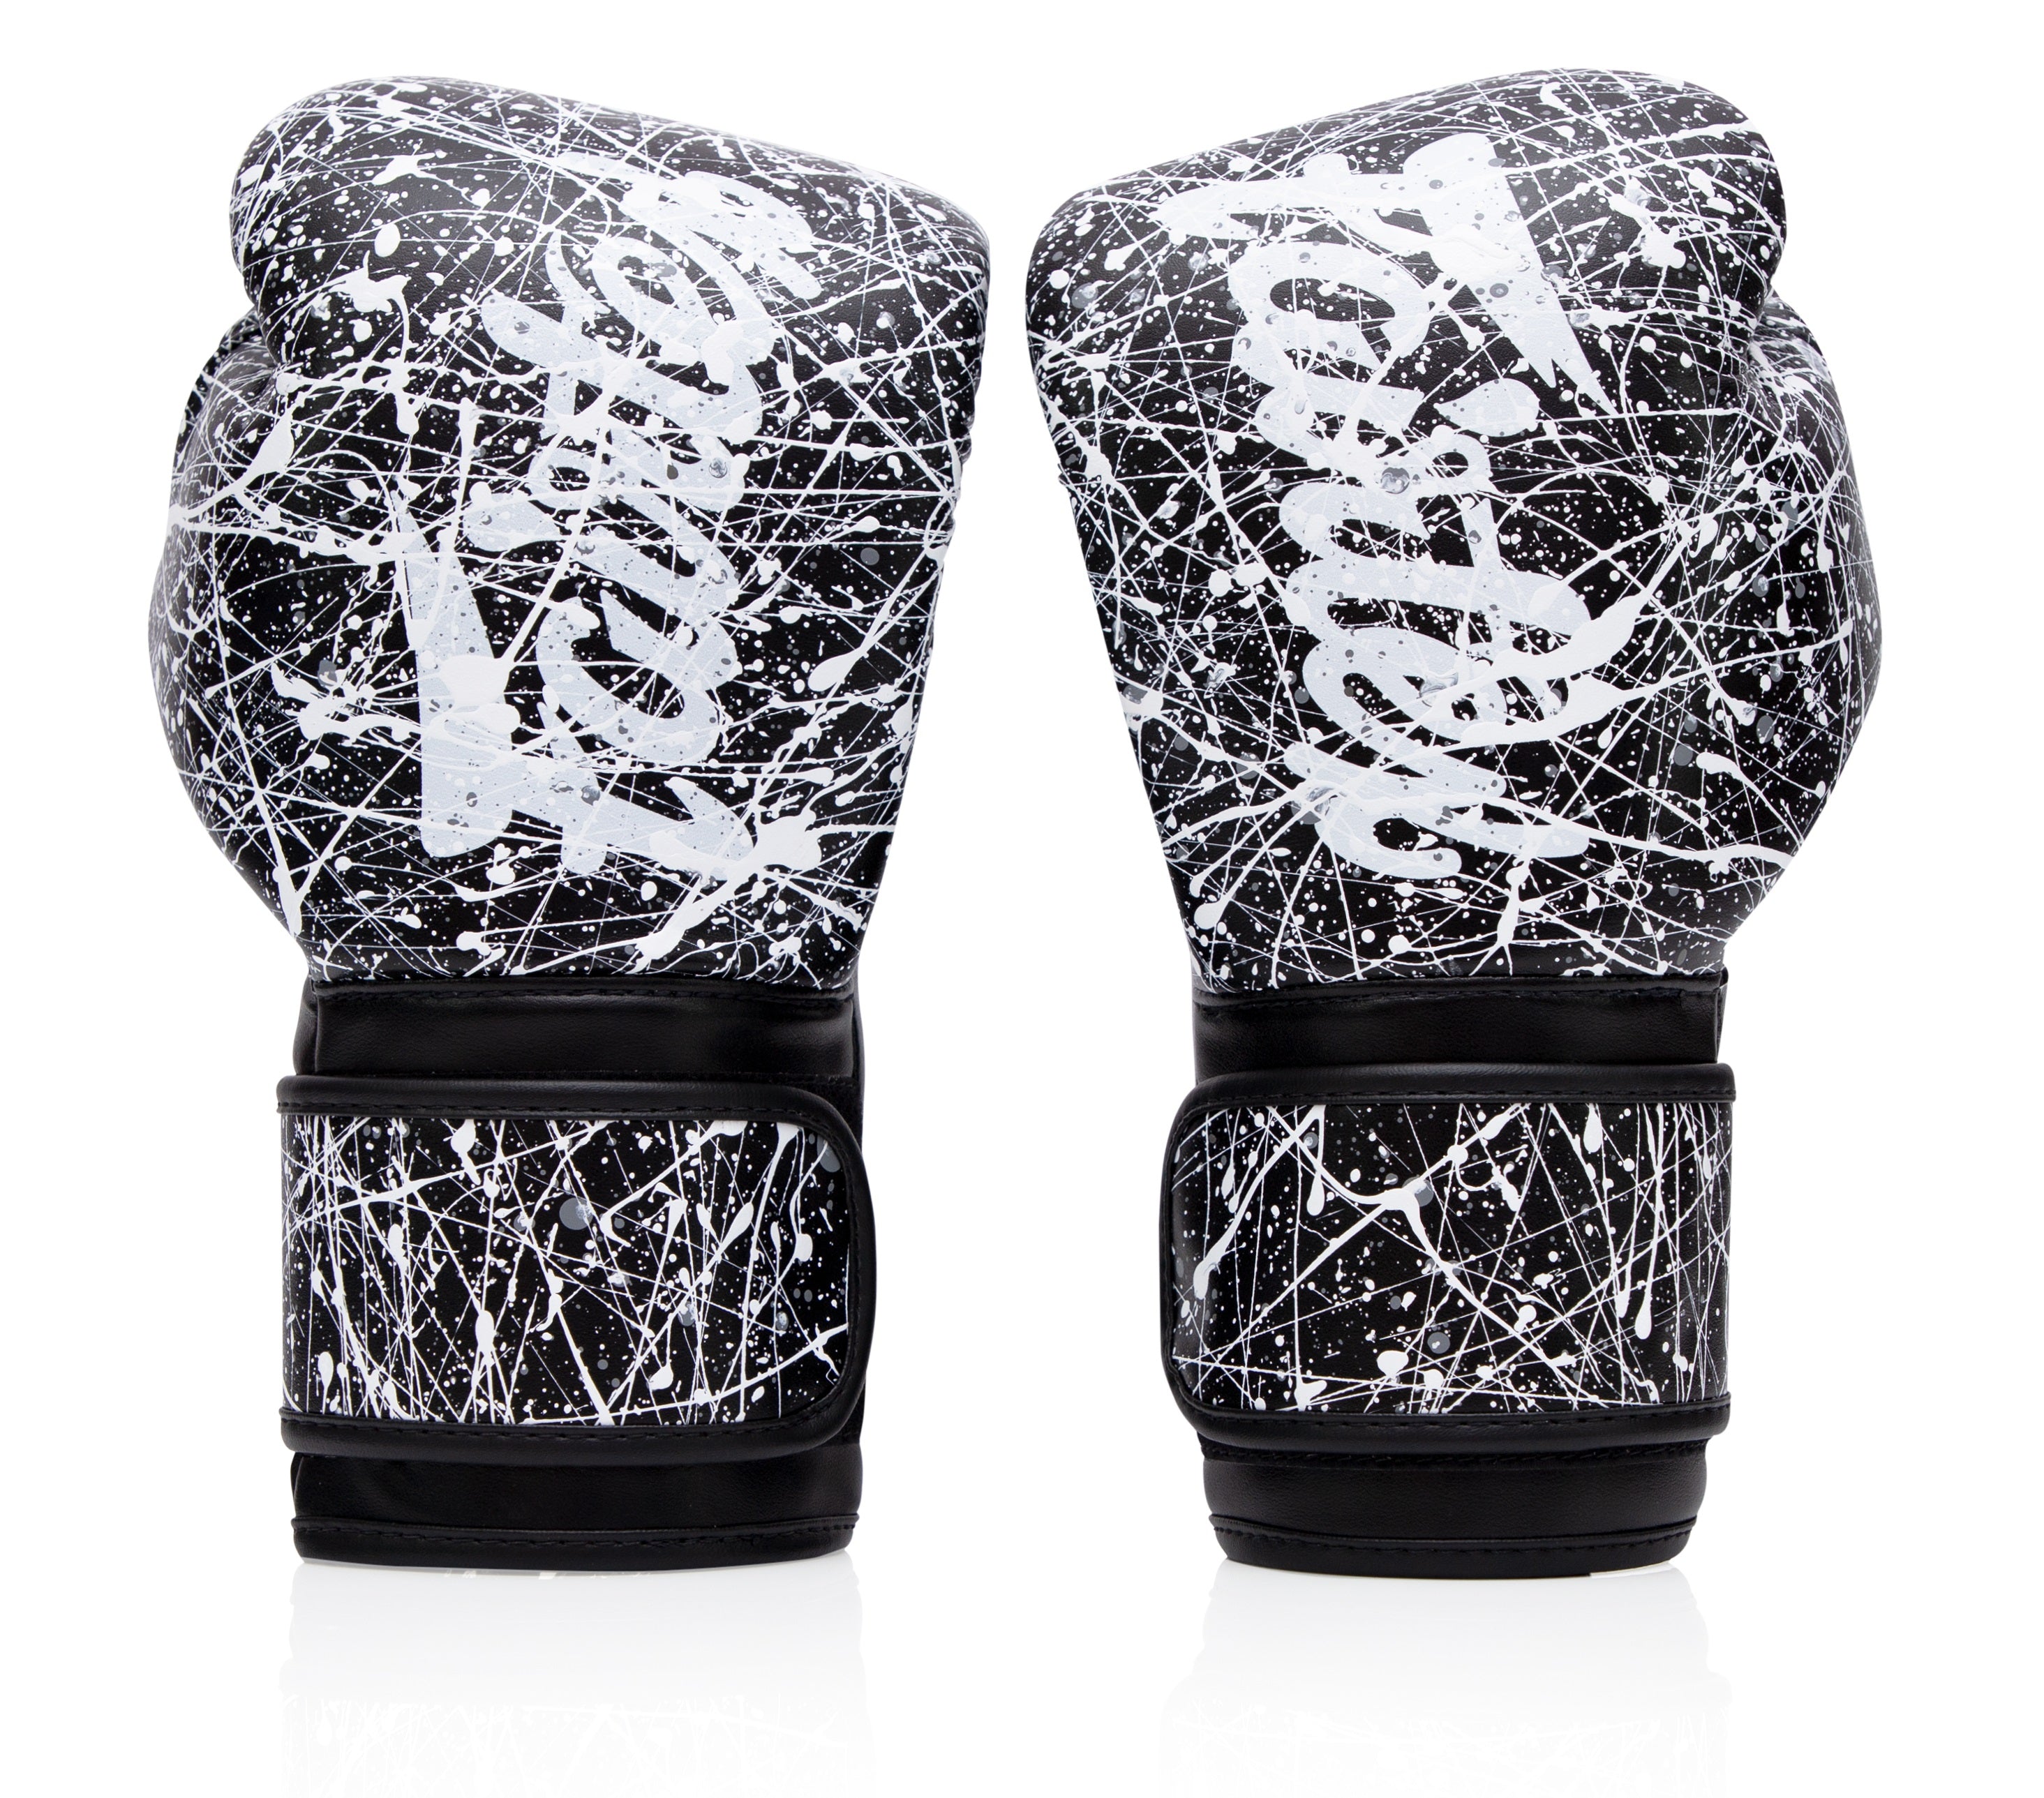 Fairtex BGV14 Black/White Painter Muay Thai Boxing Glove